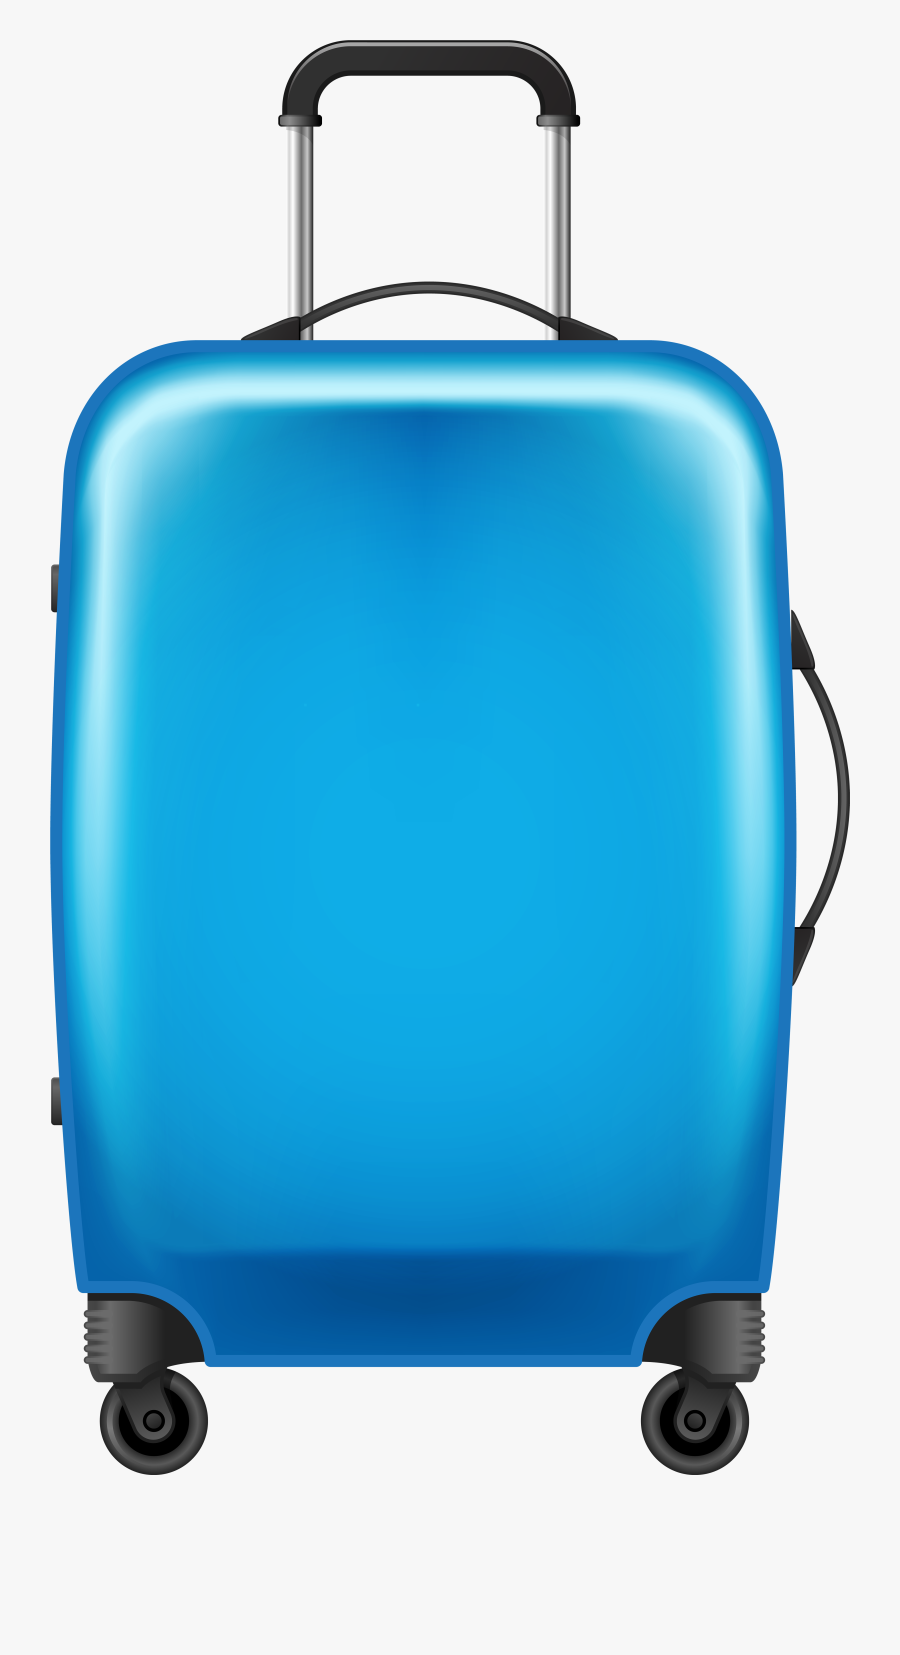 Suitcase Clipart , Png Download - Transparent Background Luggage Clipart, Transparent Clipart